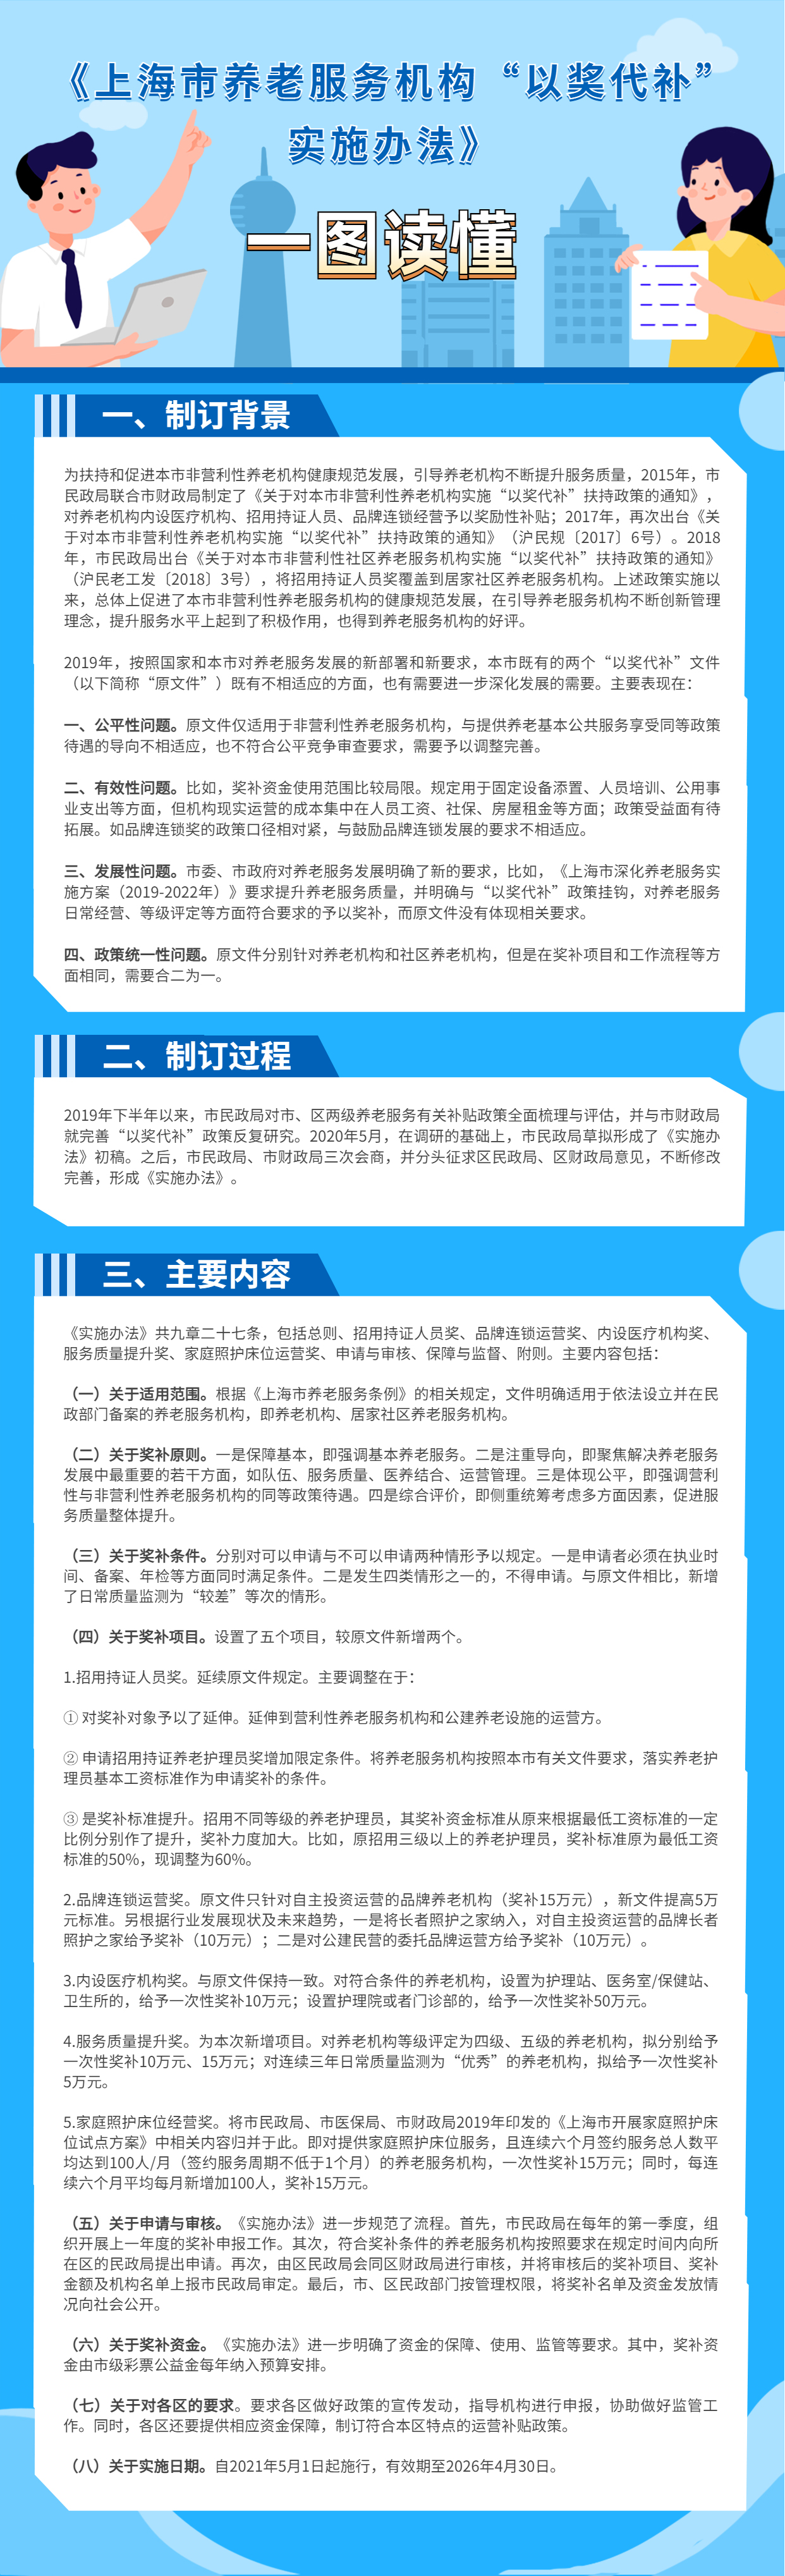 一图读懂《上海市养老服务机构“以奖代补”实施办法》.jpg